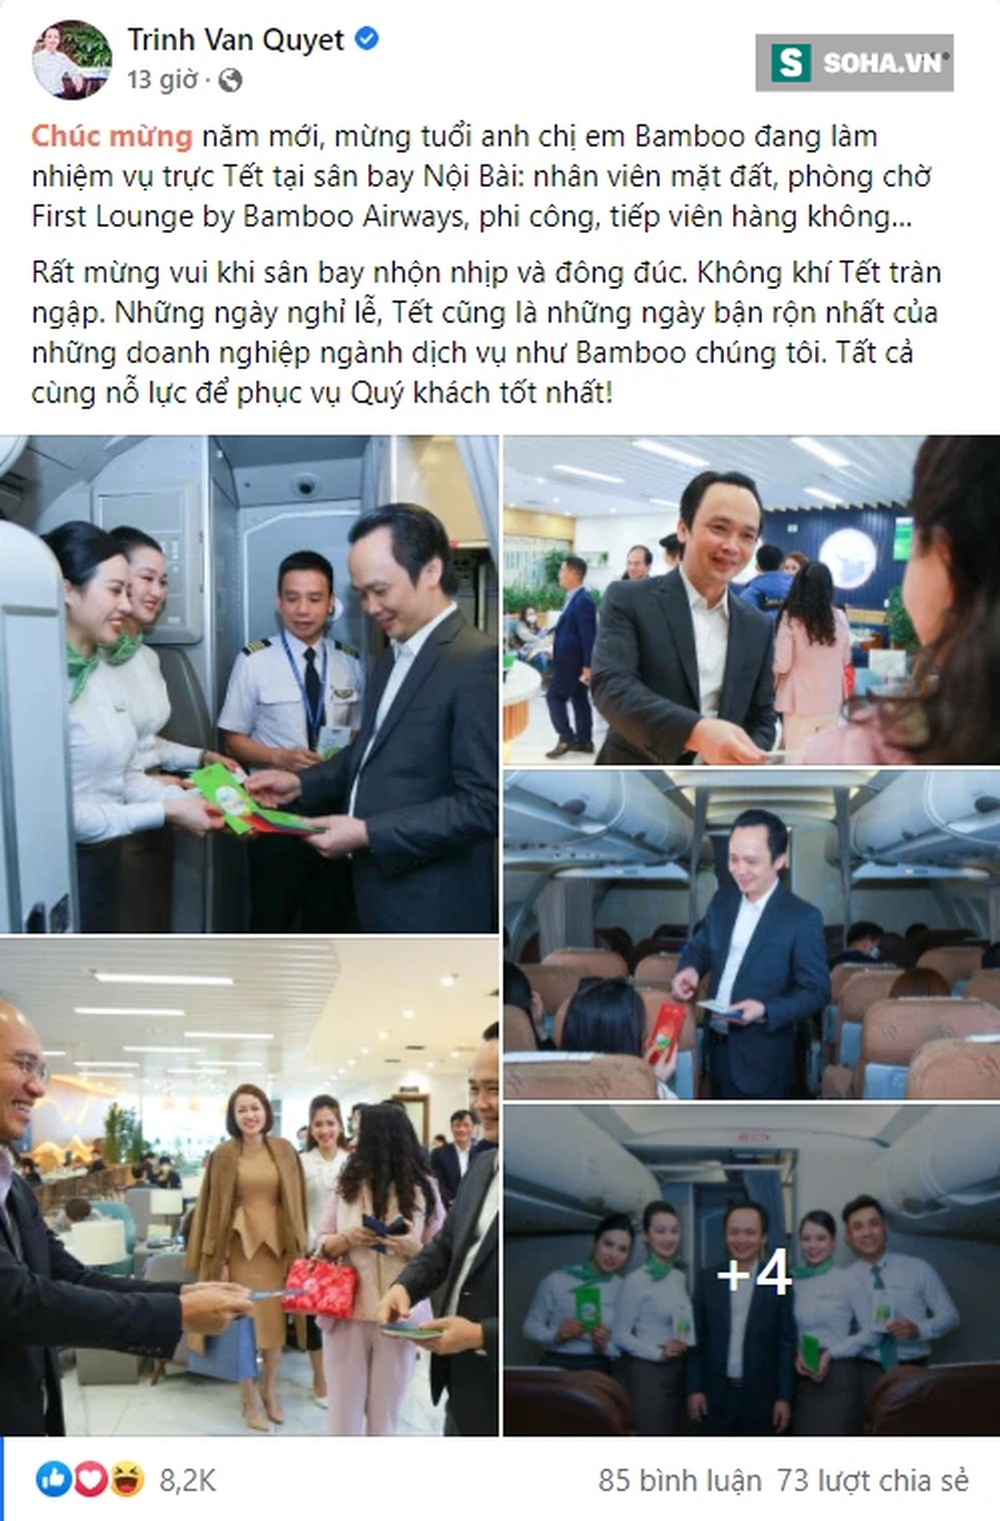 Ông Trịnh Văn Quyết xuất hiện tại sân bay Nội Bài, gây bất ngờ đầu năm mới - Ảnh 1.